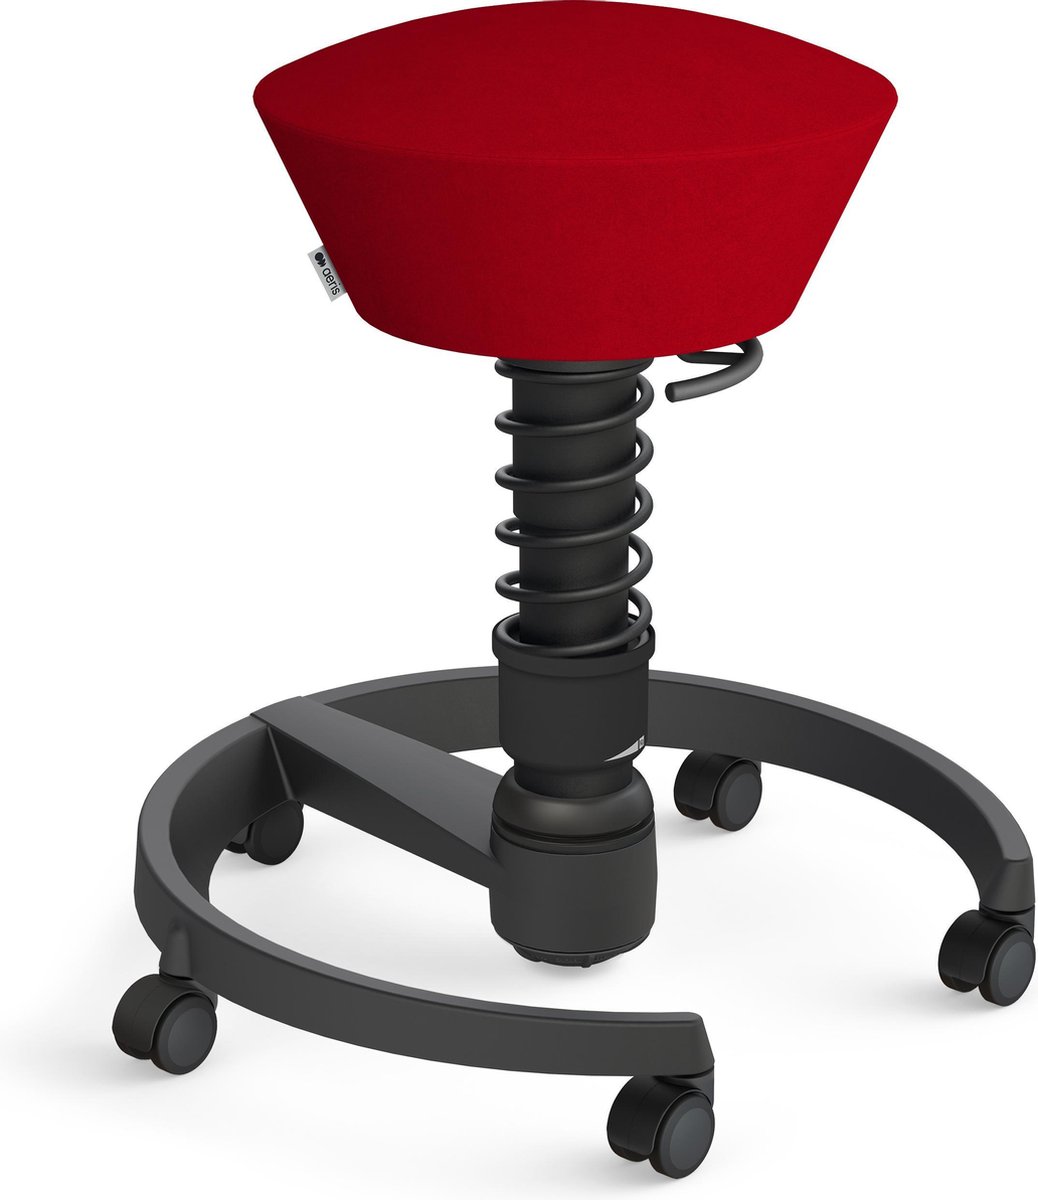 Aeris Swopper Comfort - Ergonomische bureaustoel - harde wielen - zwart frame - zwarte veer - bekleding rood microvezel